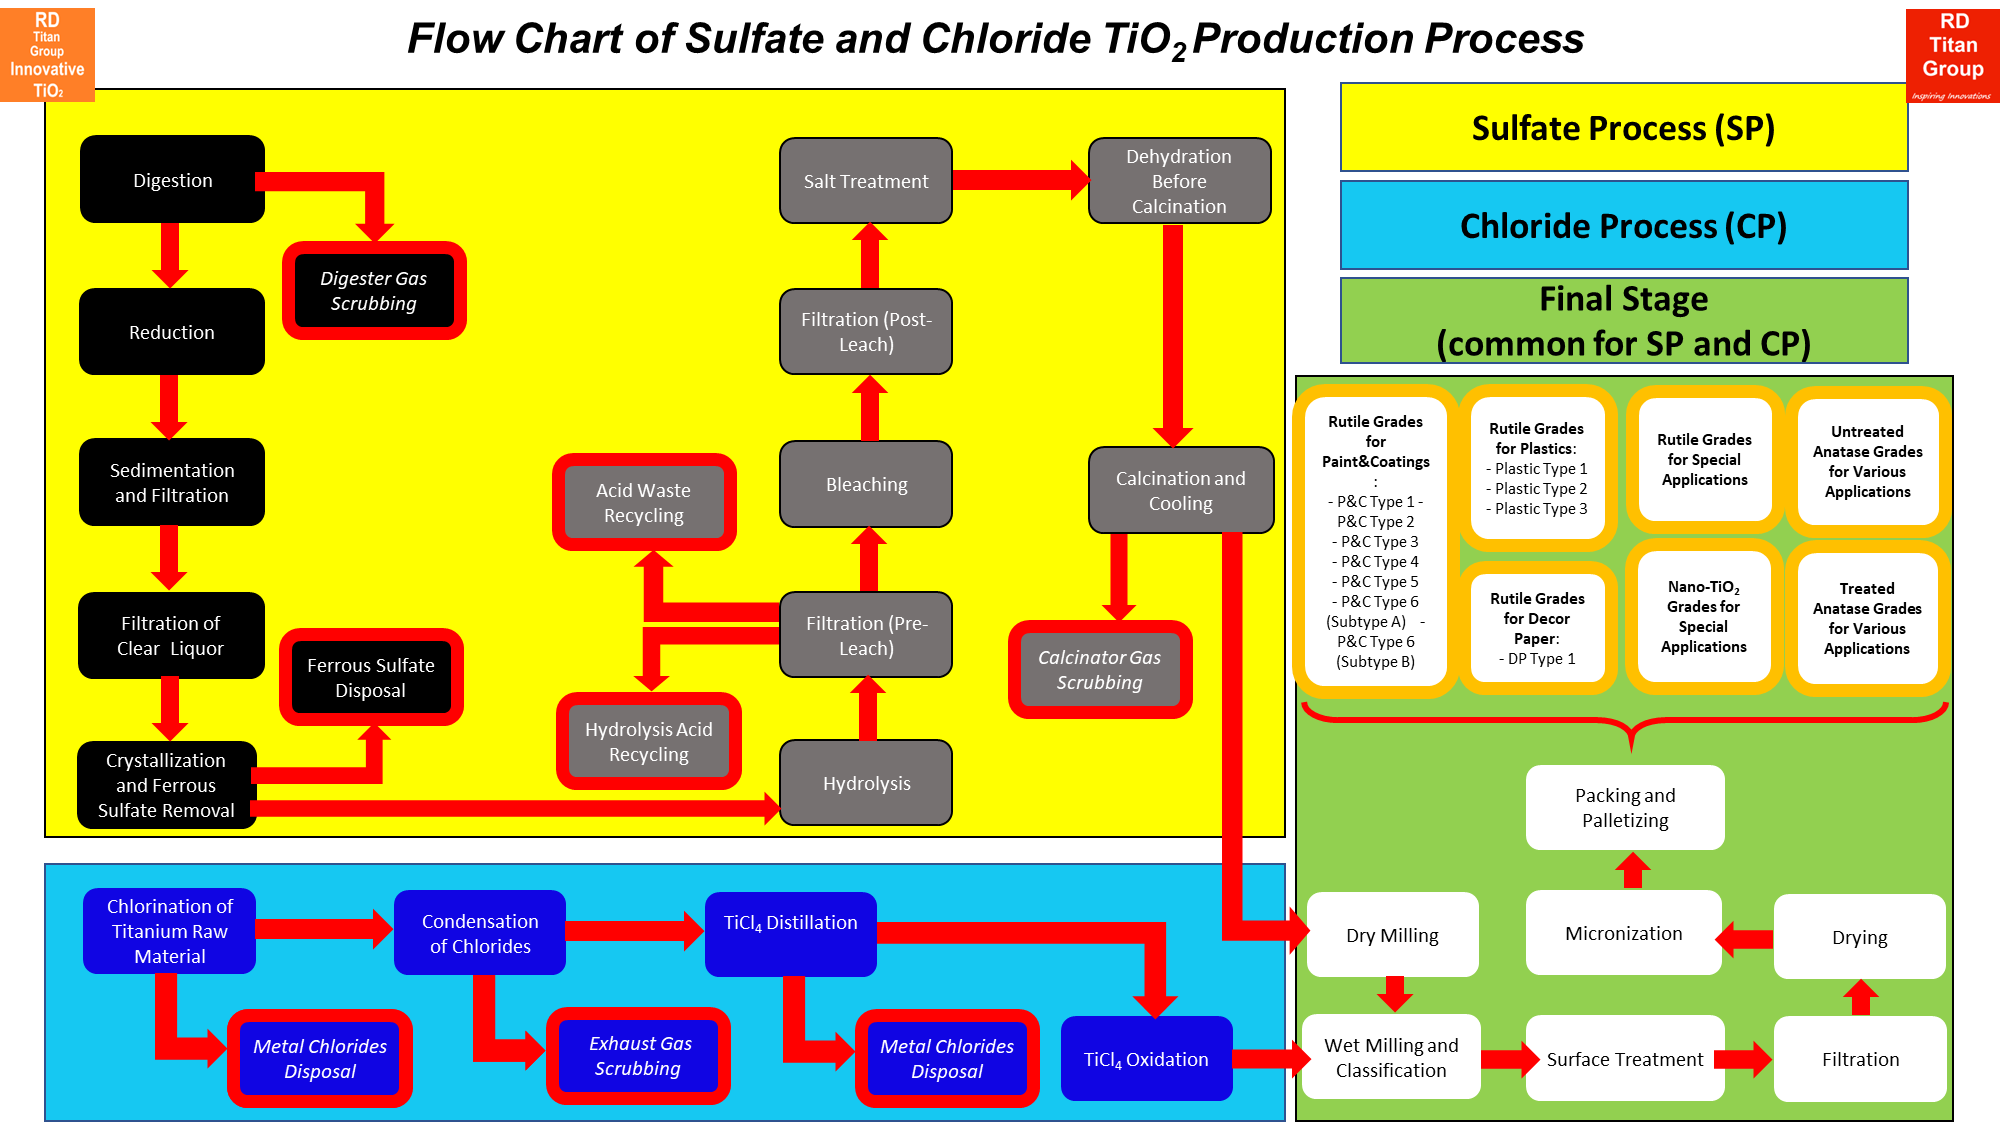 Titanium Dioxide processes